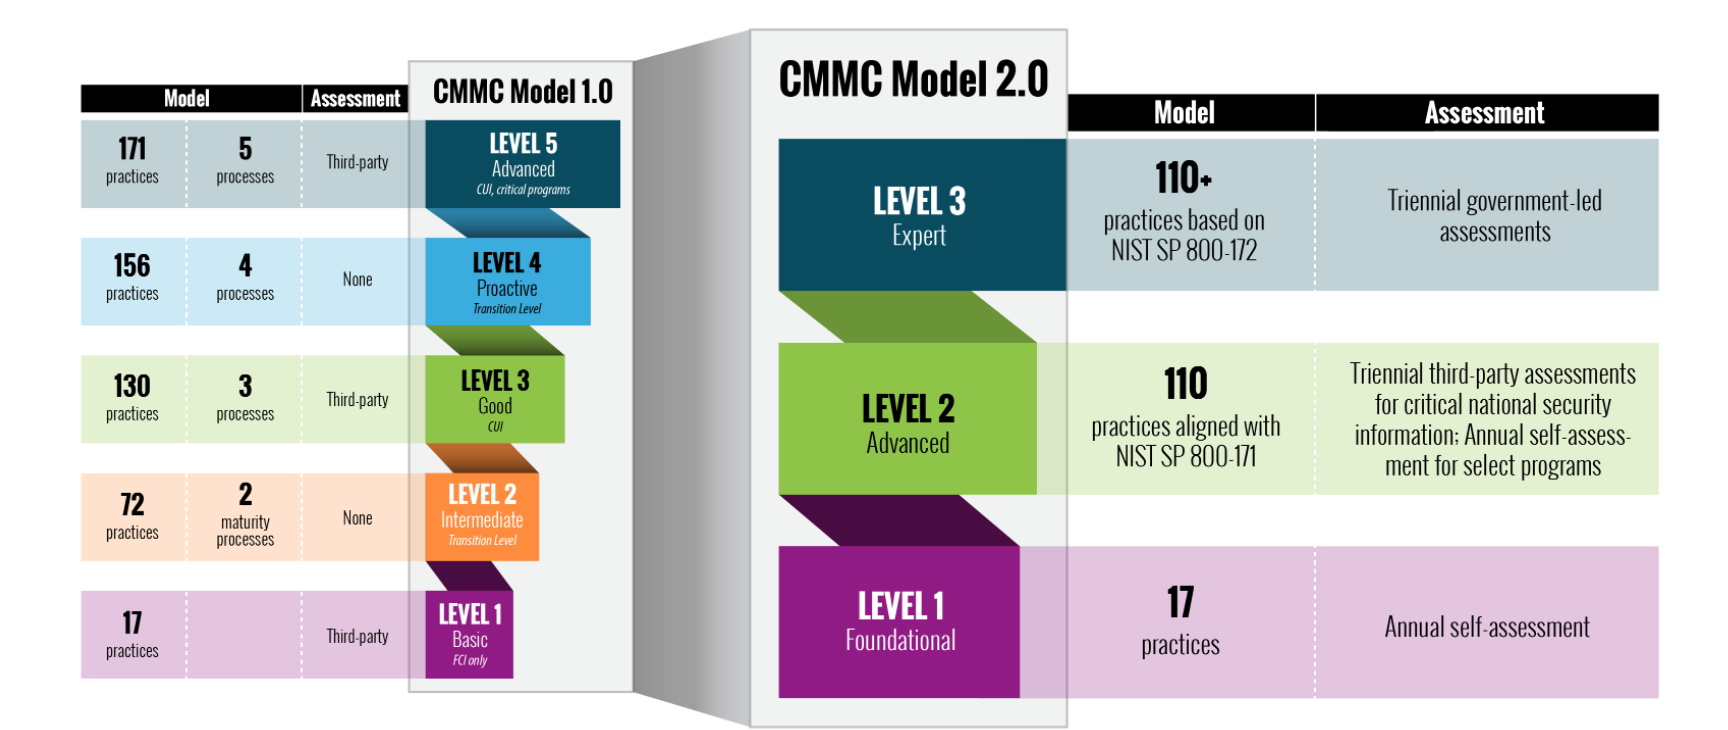 CMMC 2.0 Model